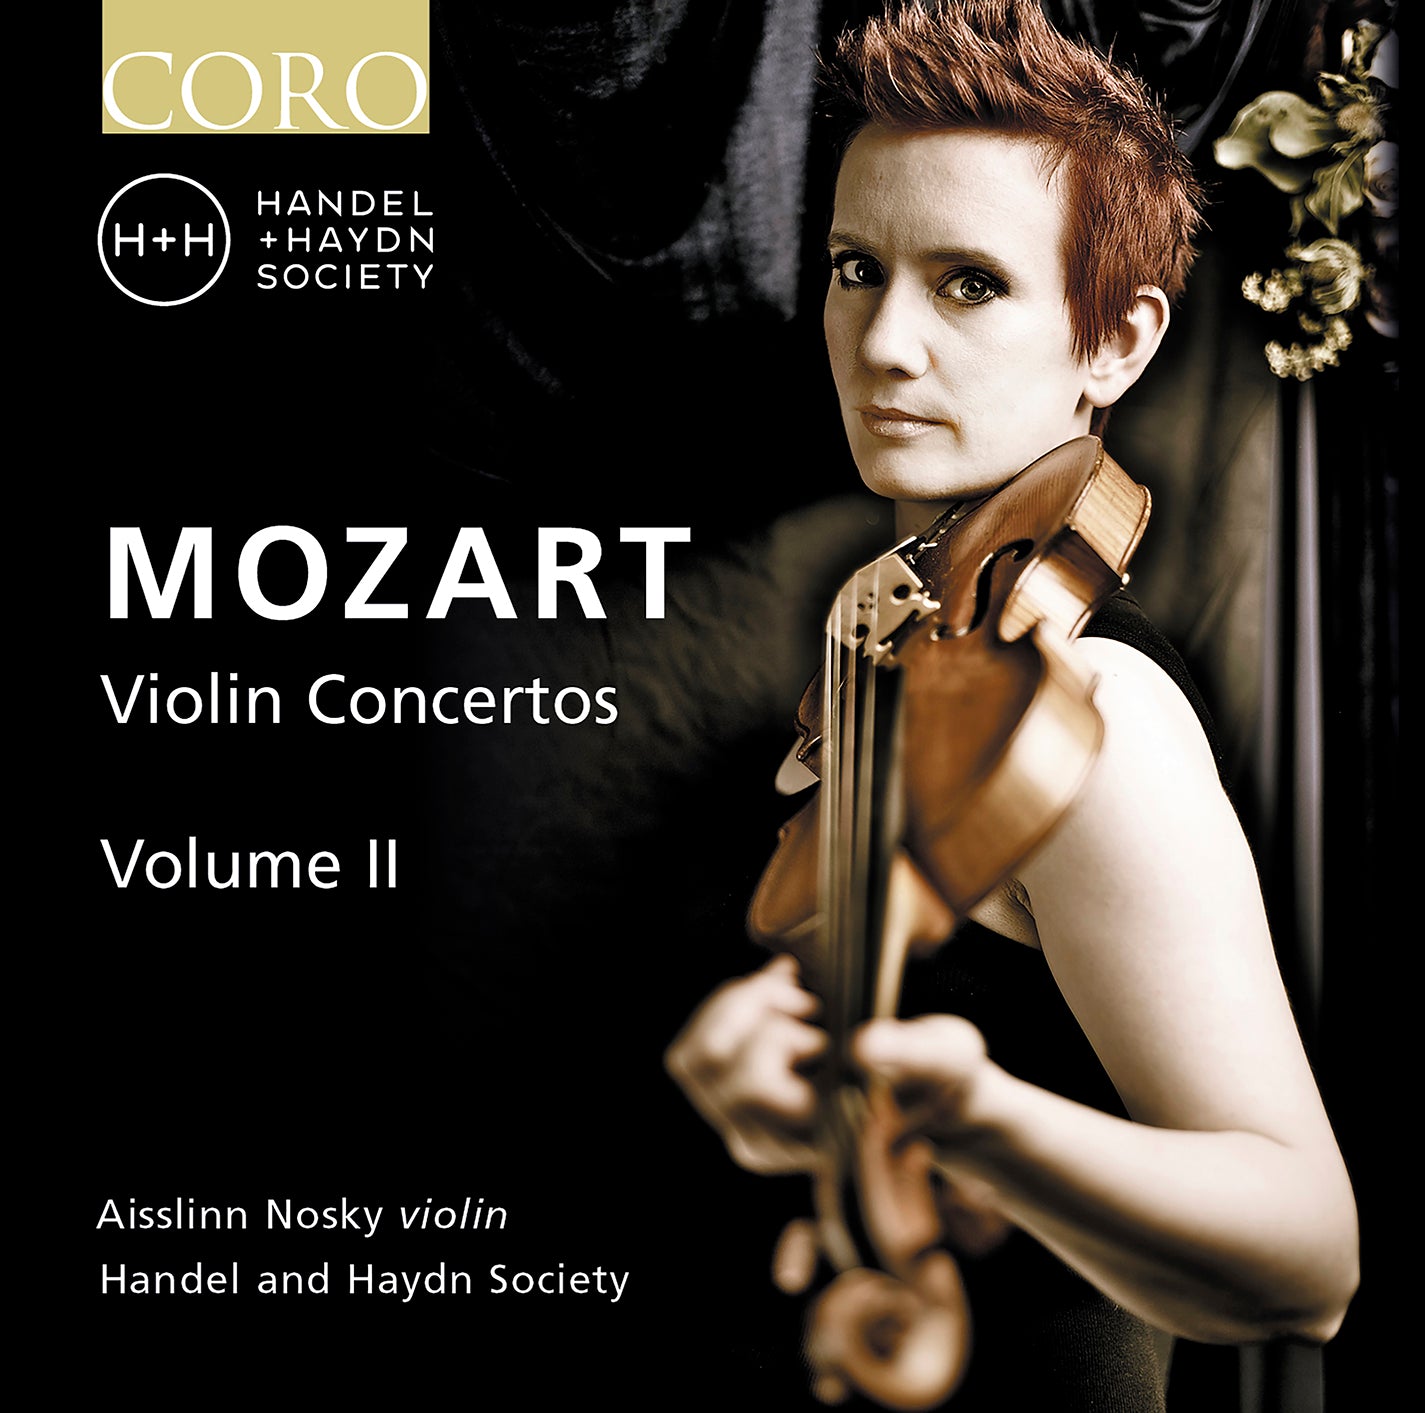 Mozart: Violin Concertos, Vol. 2 / Nosky, Handel & Haydn Society